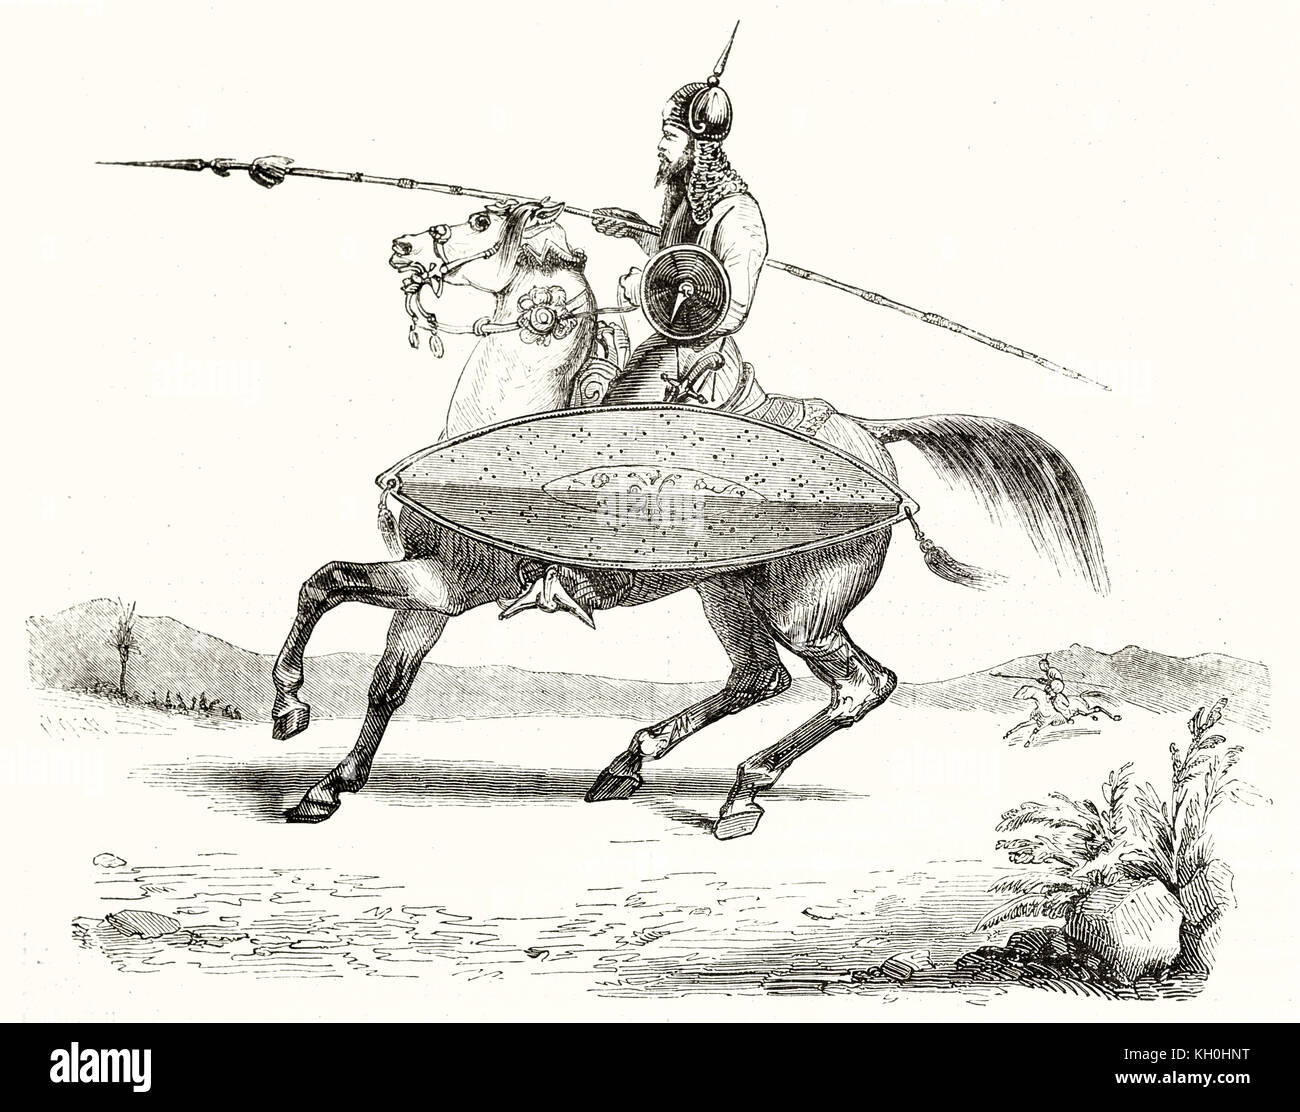 Vieille illustration d'un chevalier Wahabi. Par Prisse, publ. sur Magasin Pittoresque, Paris, 1847 Banque D'Images